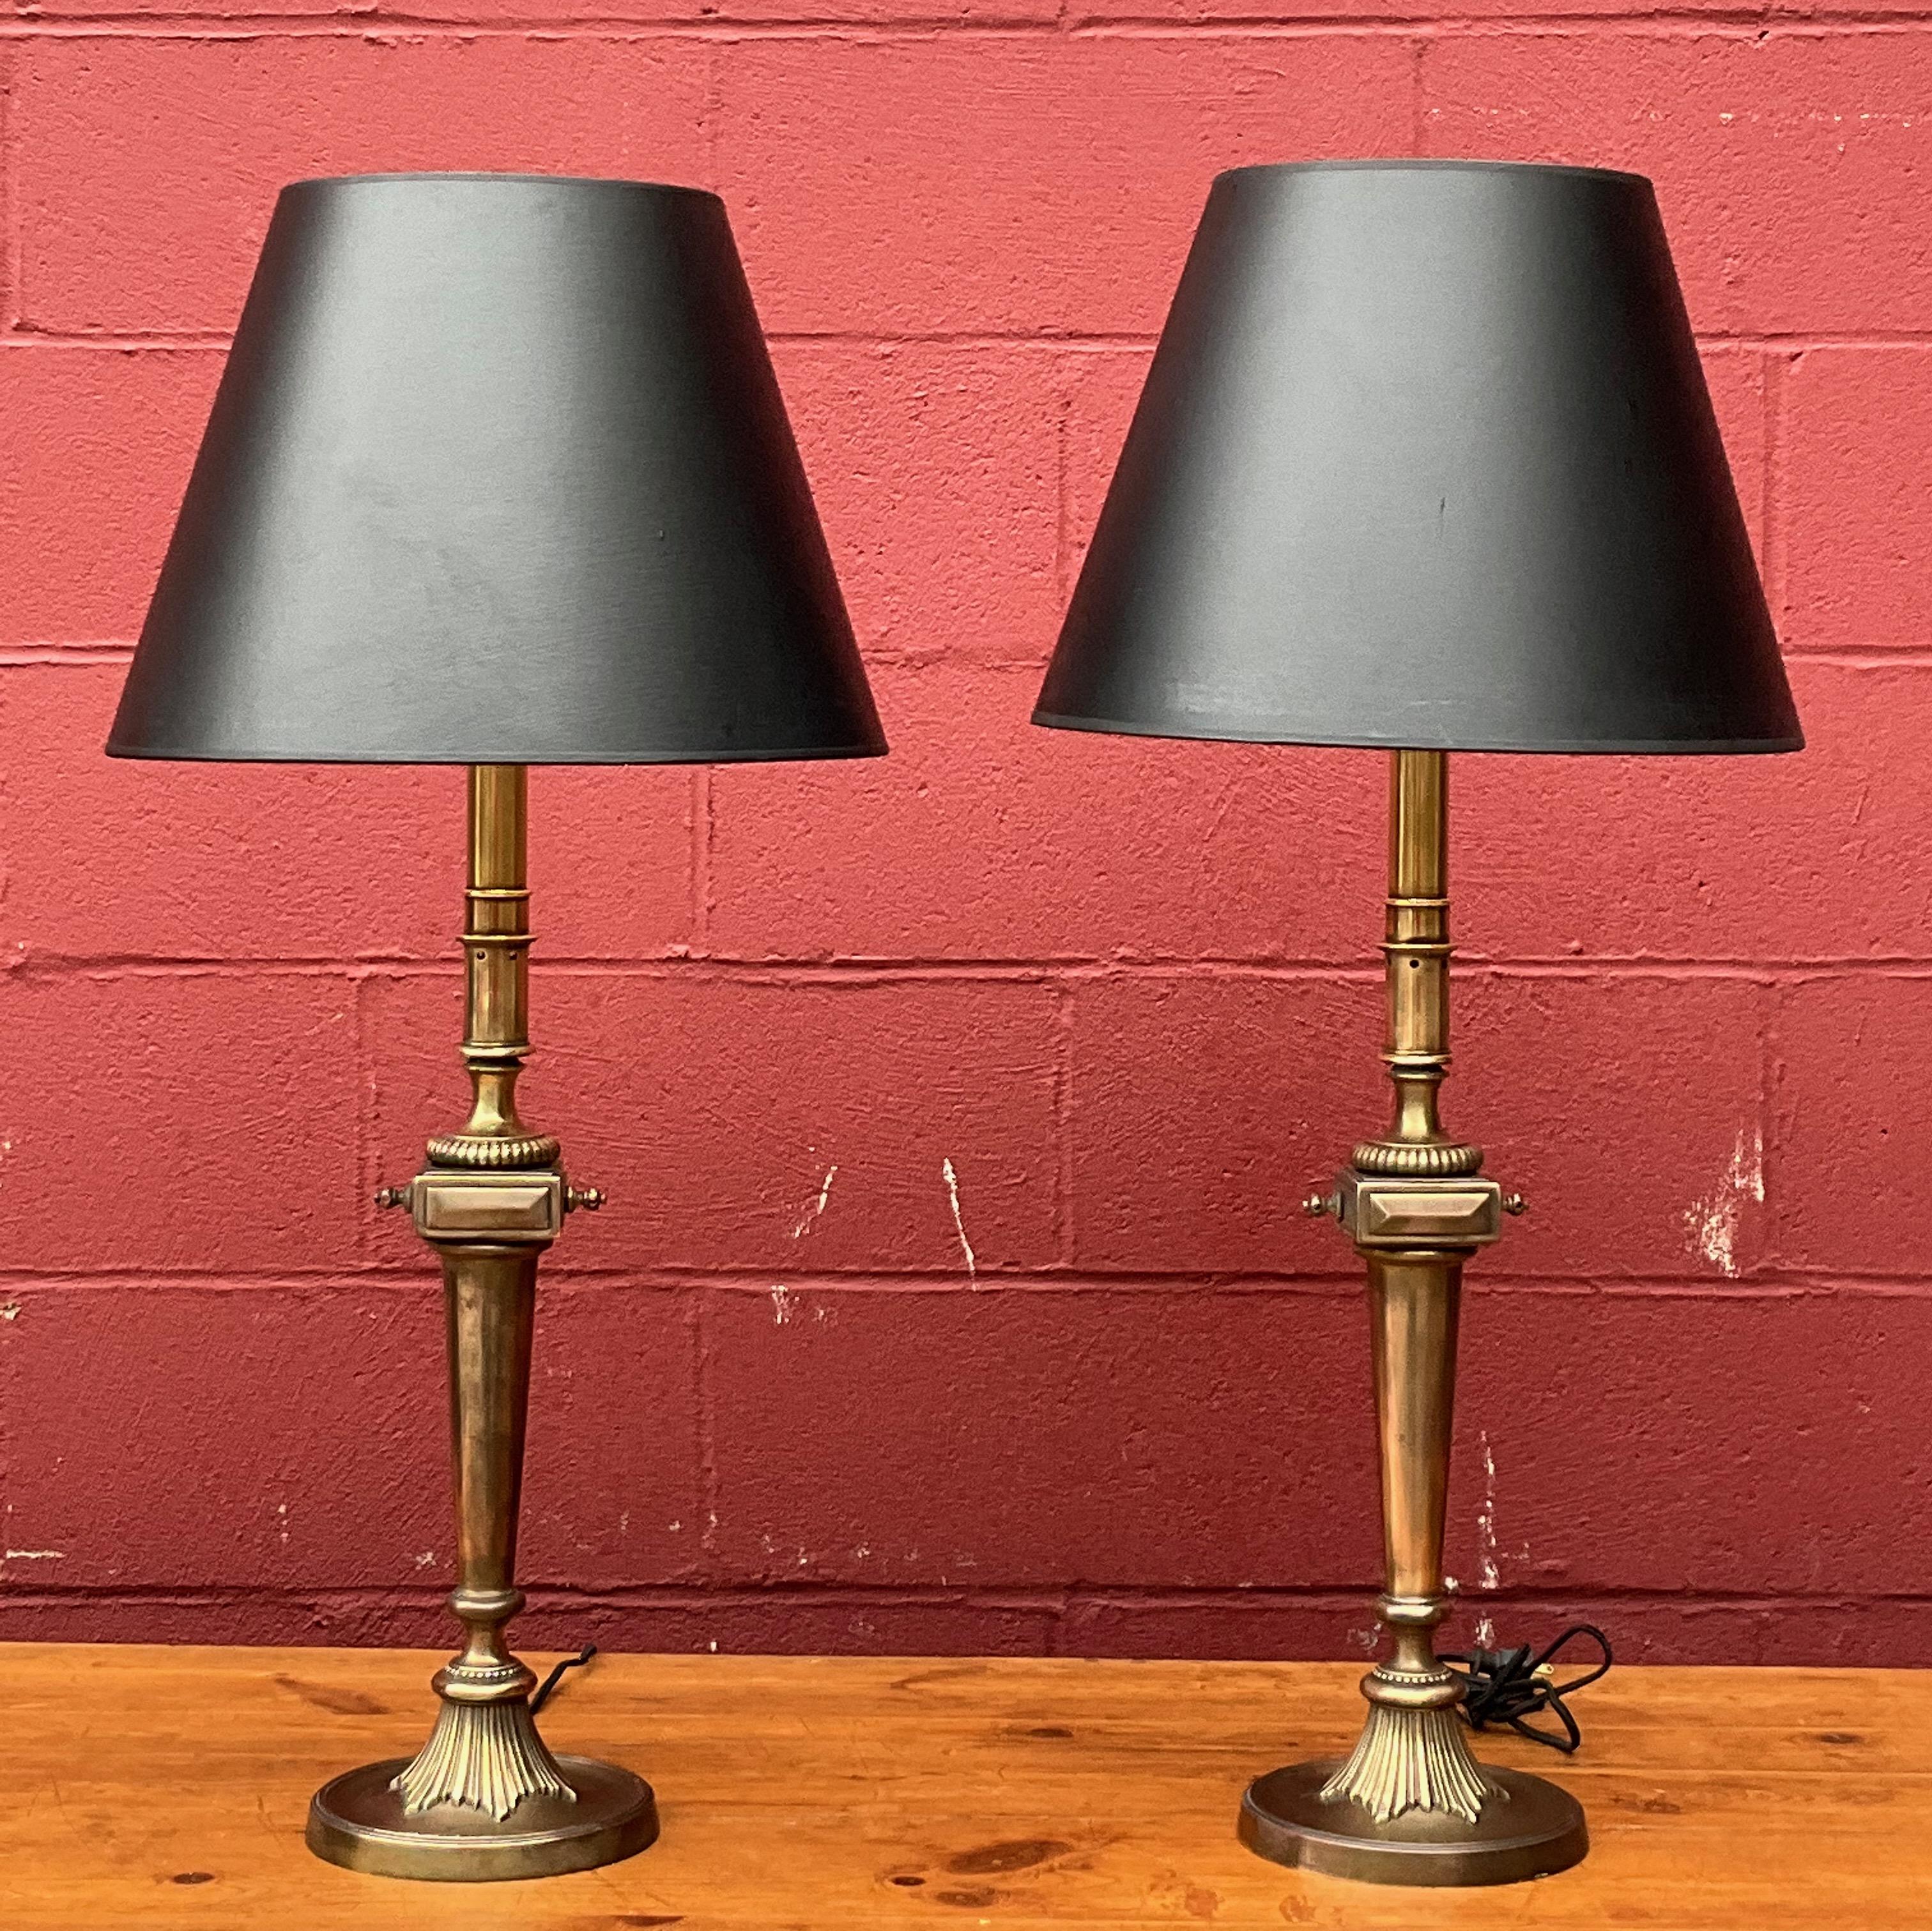 Voici une paire de lampes de table en laiton néoclassique américain des années 1950, de bonne facture, avec une finition en laiton anglais, qui ont été récemment reconnectées pour une fonctionnalité optimale. Ces lampes présentent une charmante